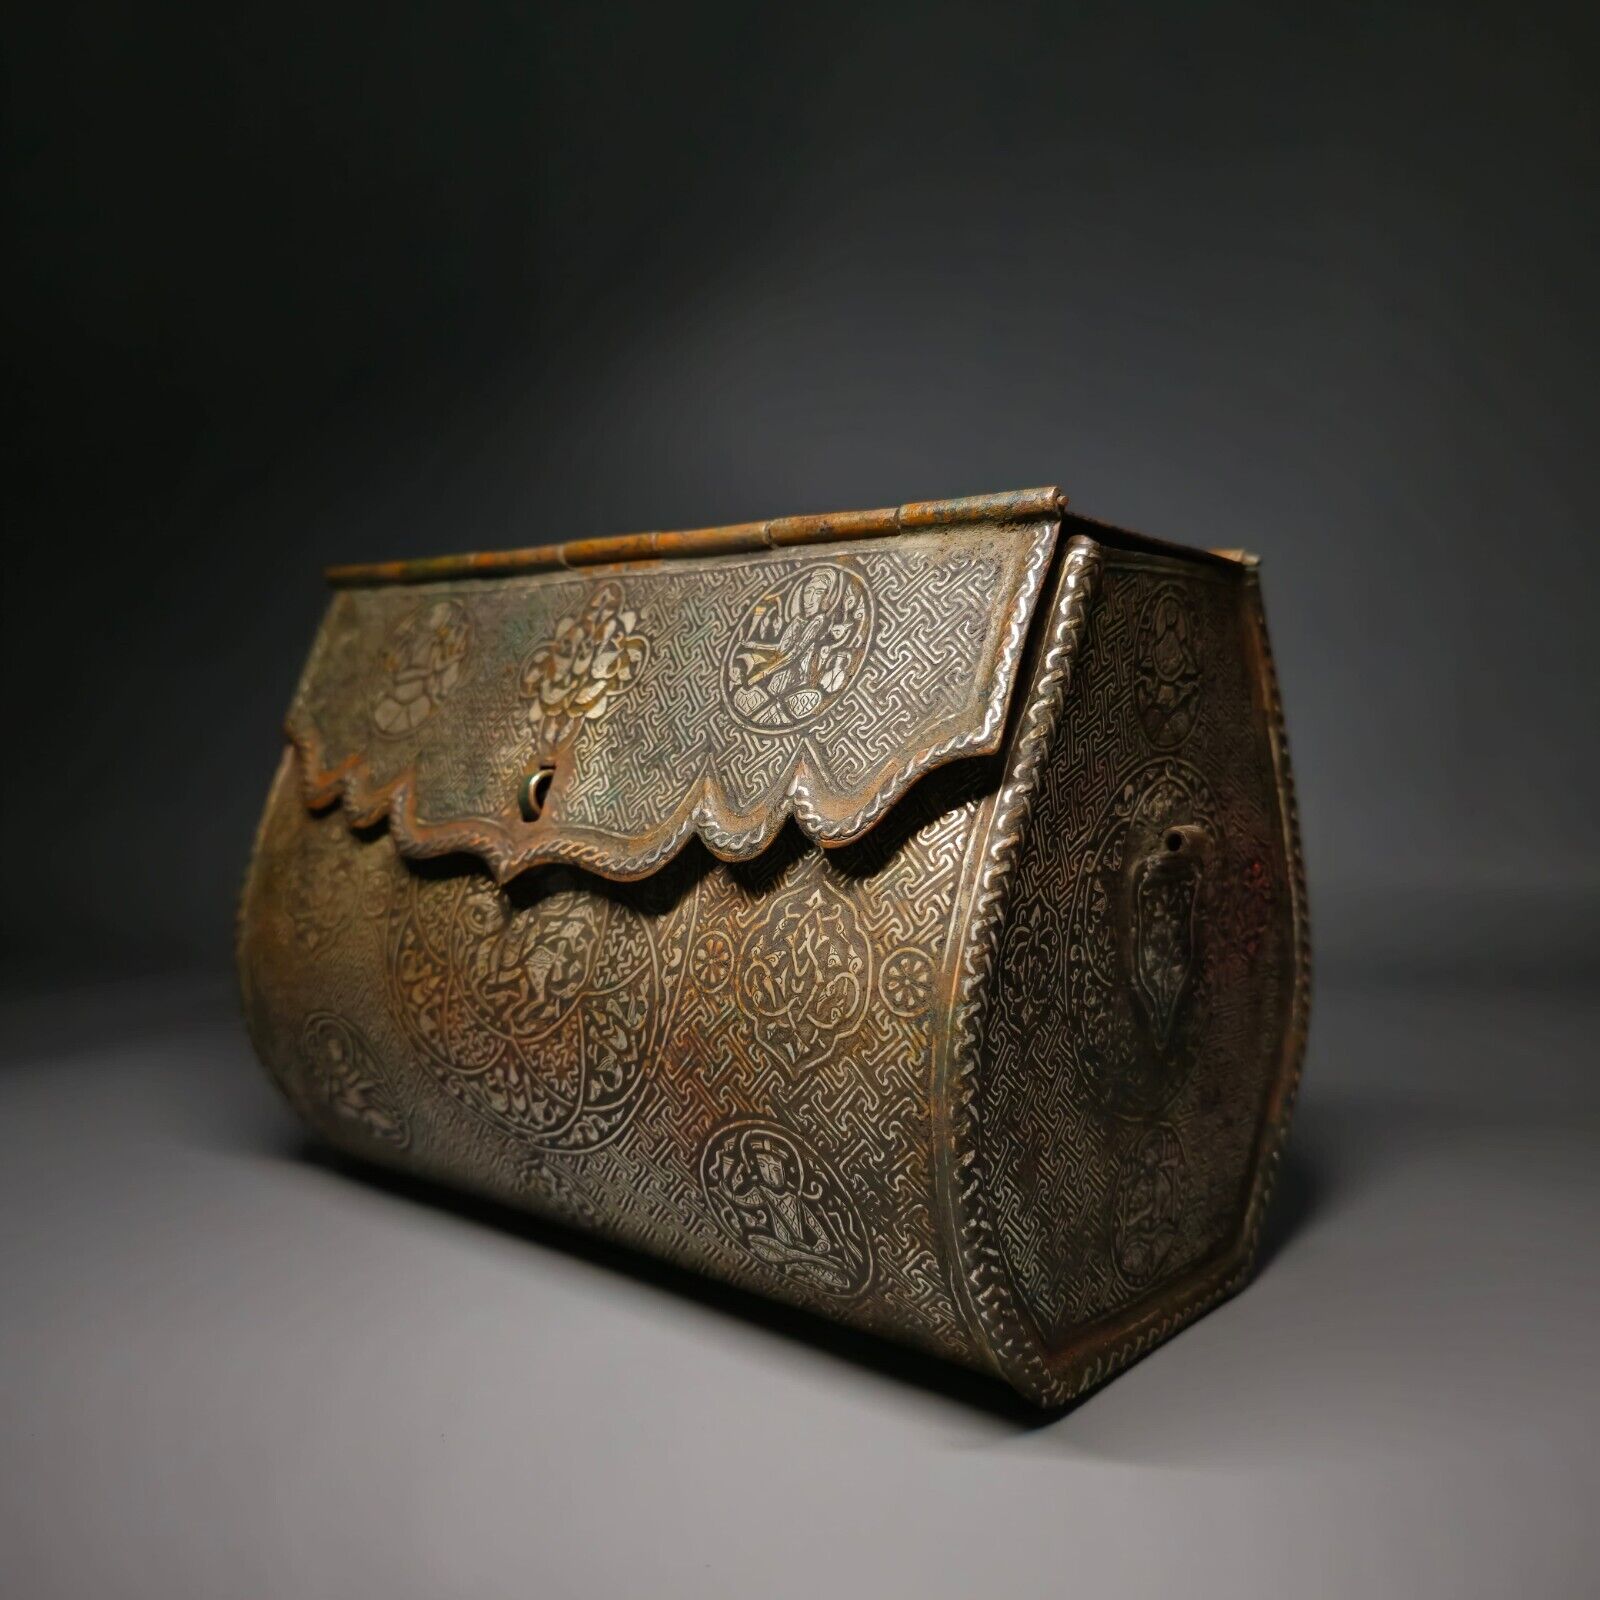 Unique 14th Century Mosul Bronze Handbag With Sliver Inlays 